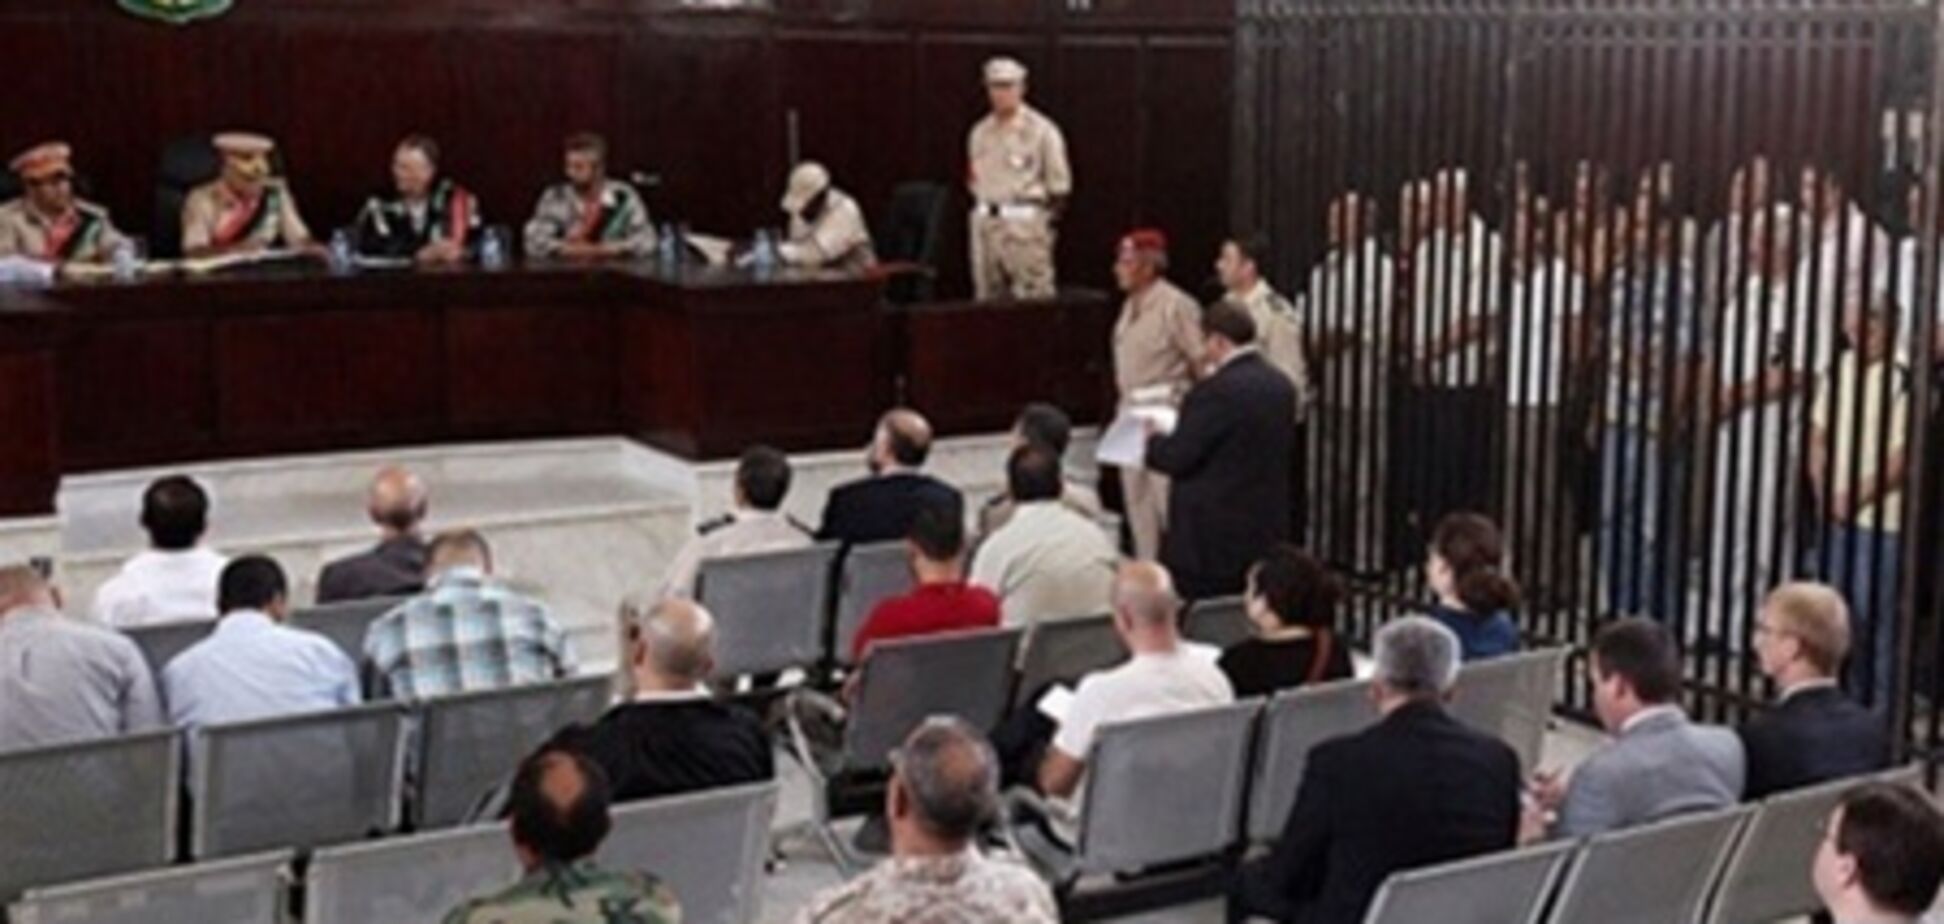 Суд в Лівії розгляне апеляцію засуджених українців 1 травня